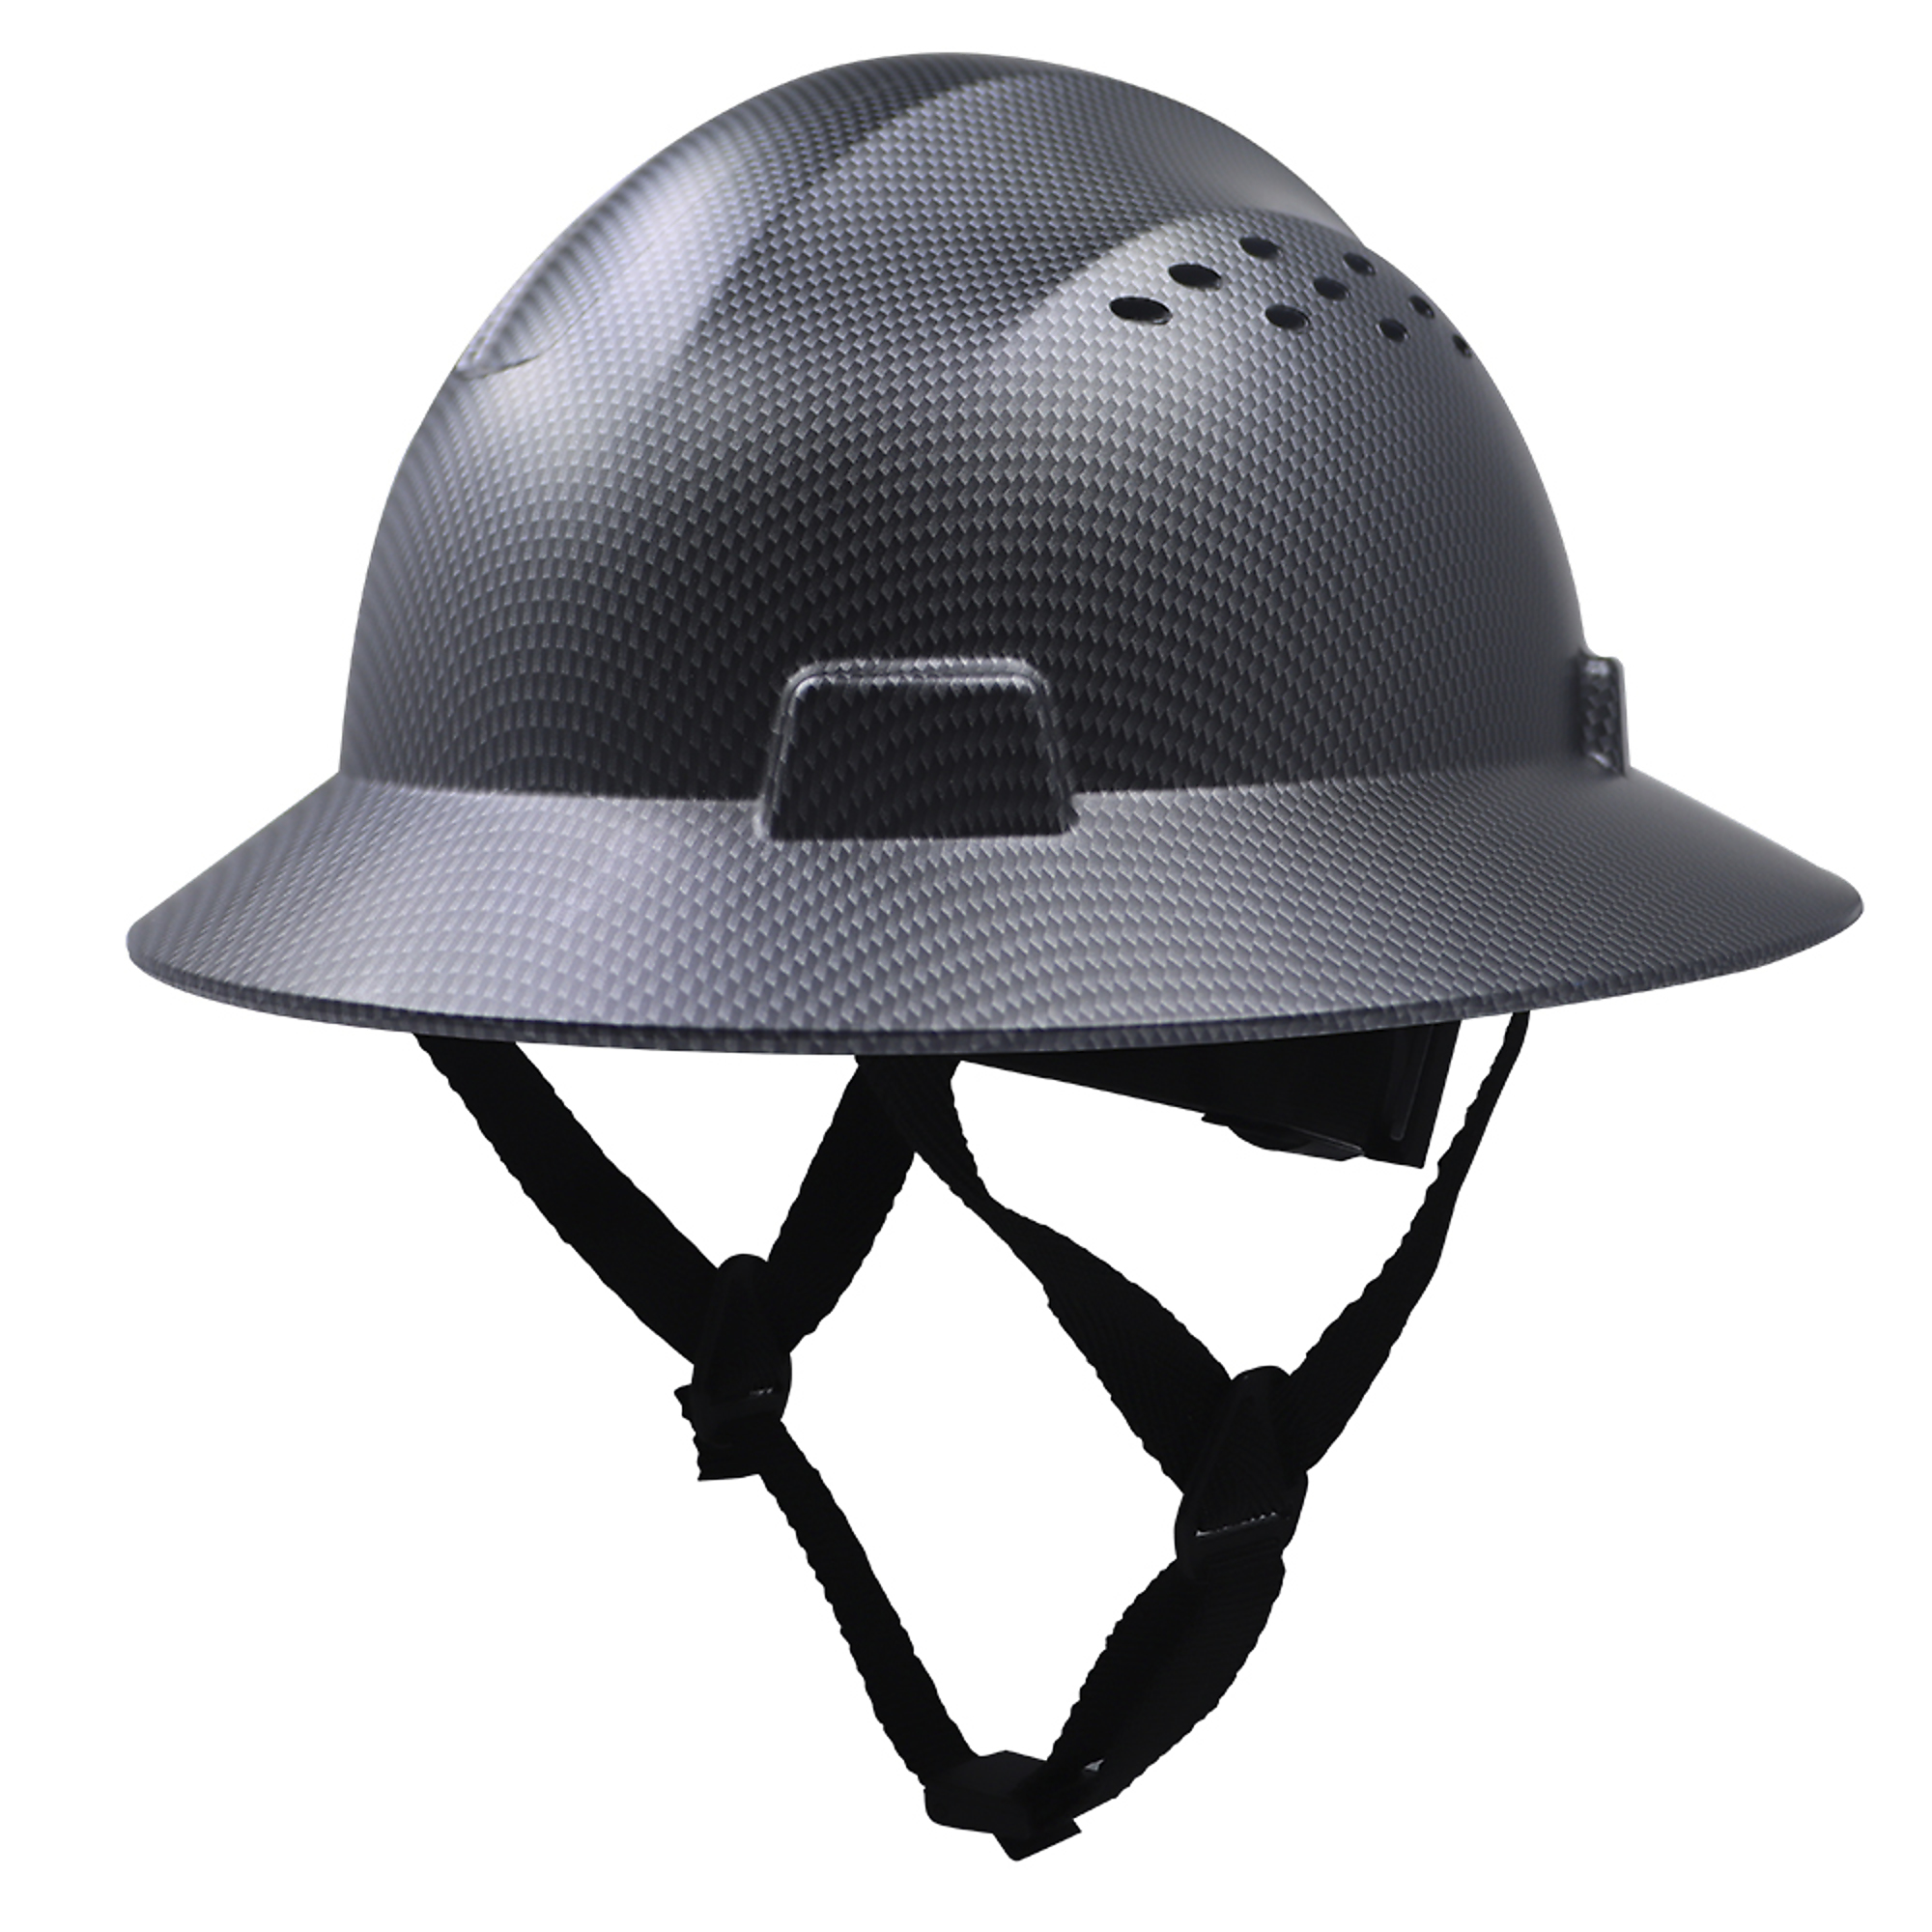 General Electric, BLACK CARBON FIBER FULL BRIM HARD HAT VENTED, Size One Size, Color Black Carbon Fiber, Hat Style Full Brim, Model GH328CB